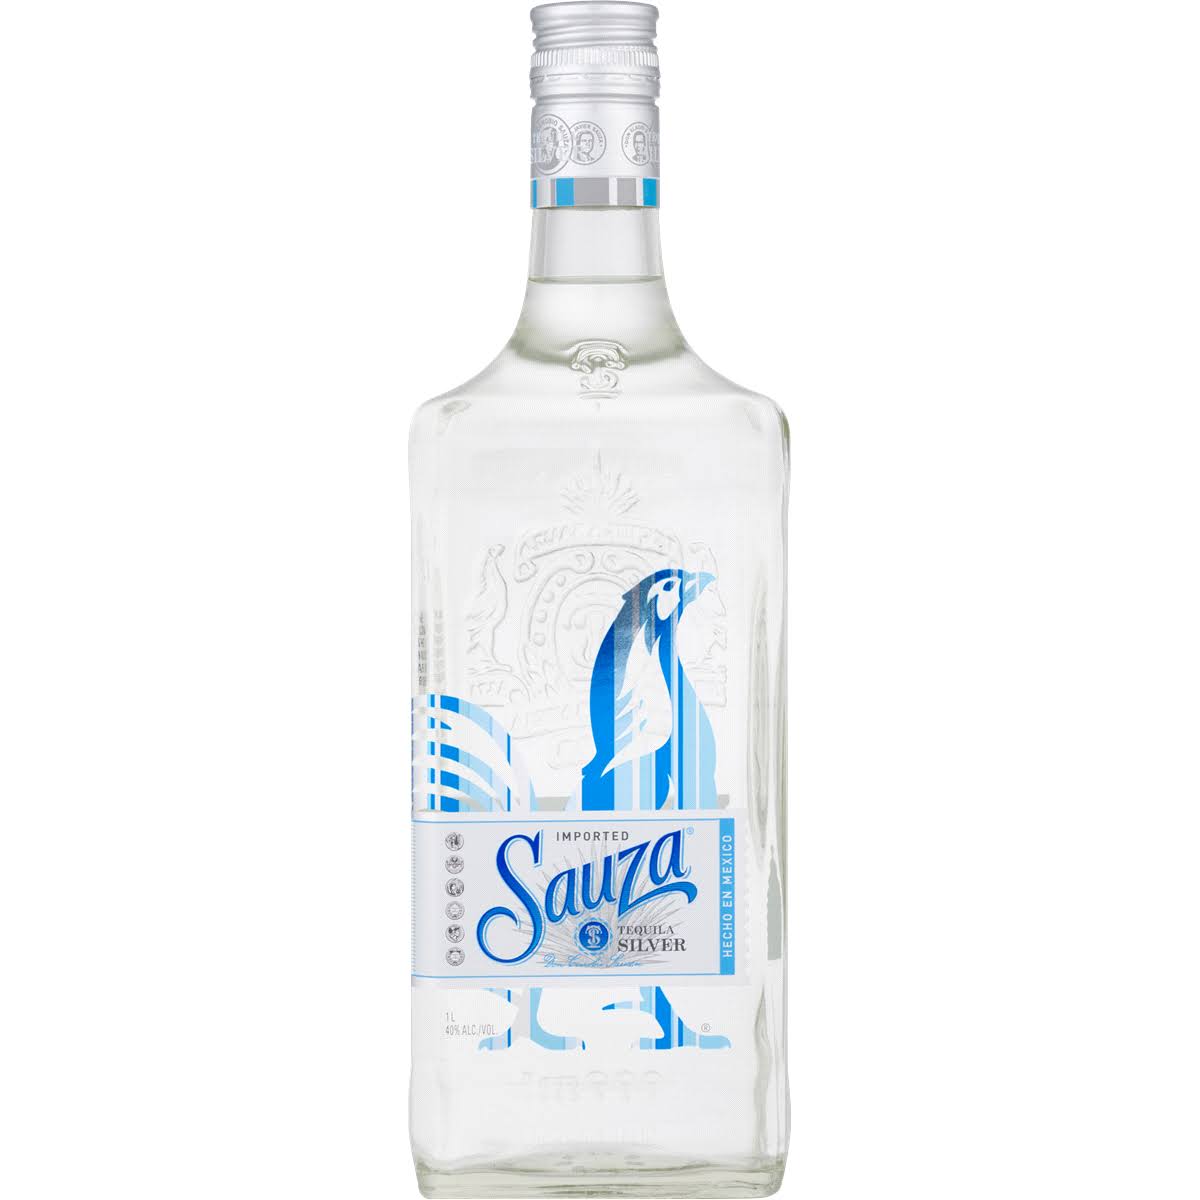 Sauza Silver Tequila - 200 ml